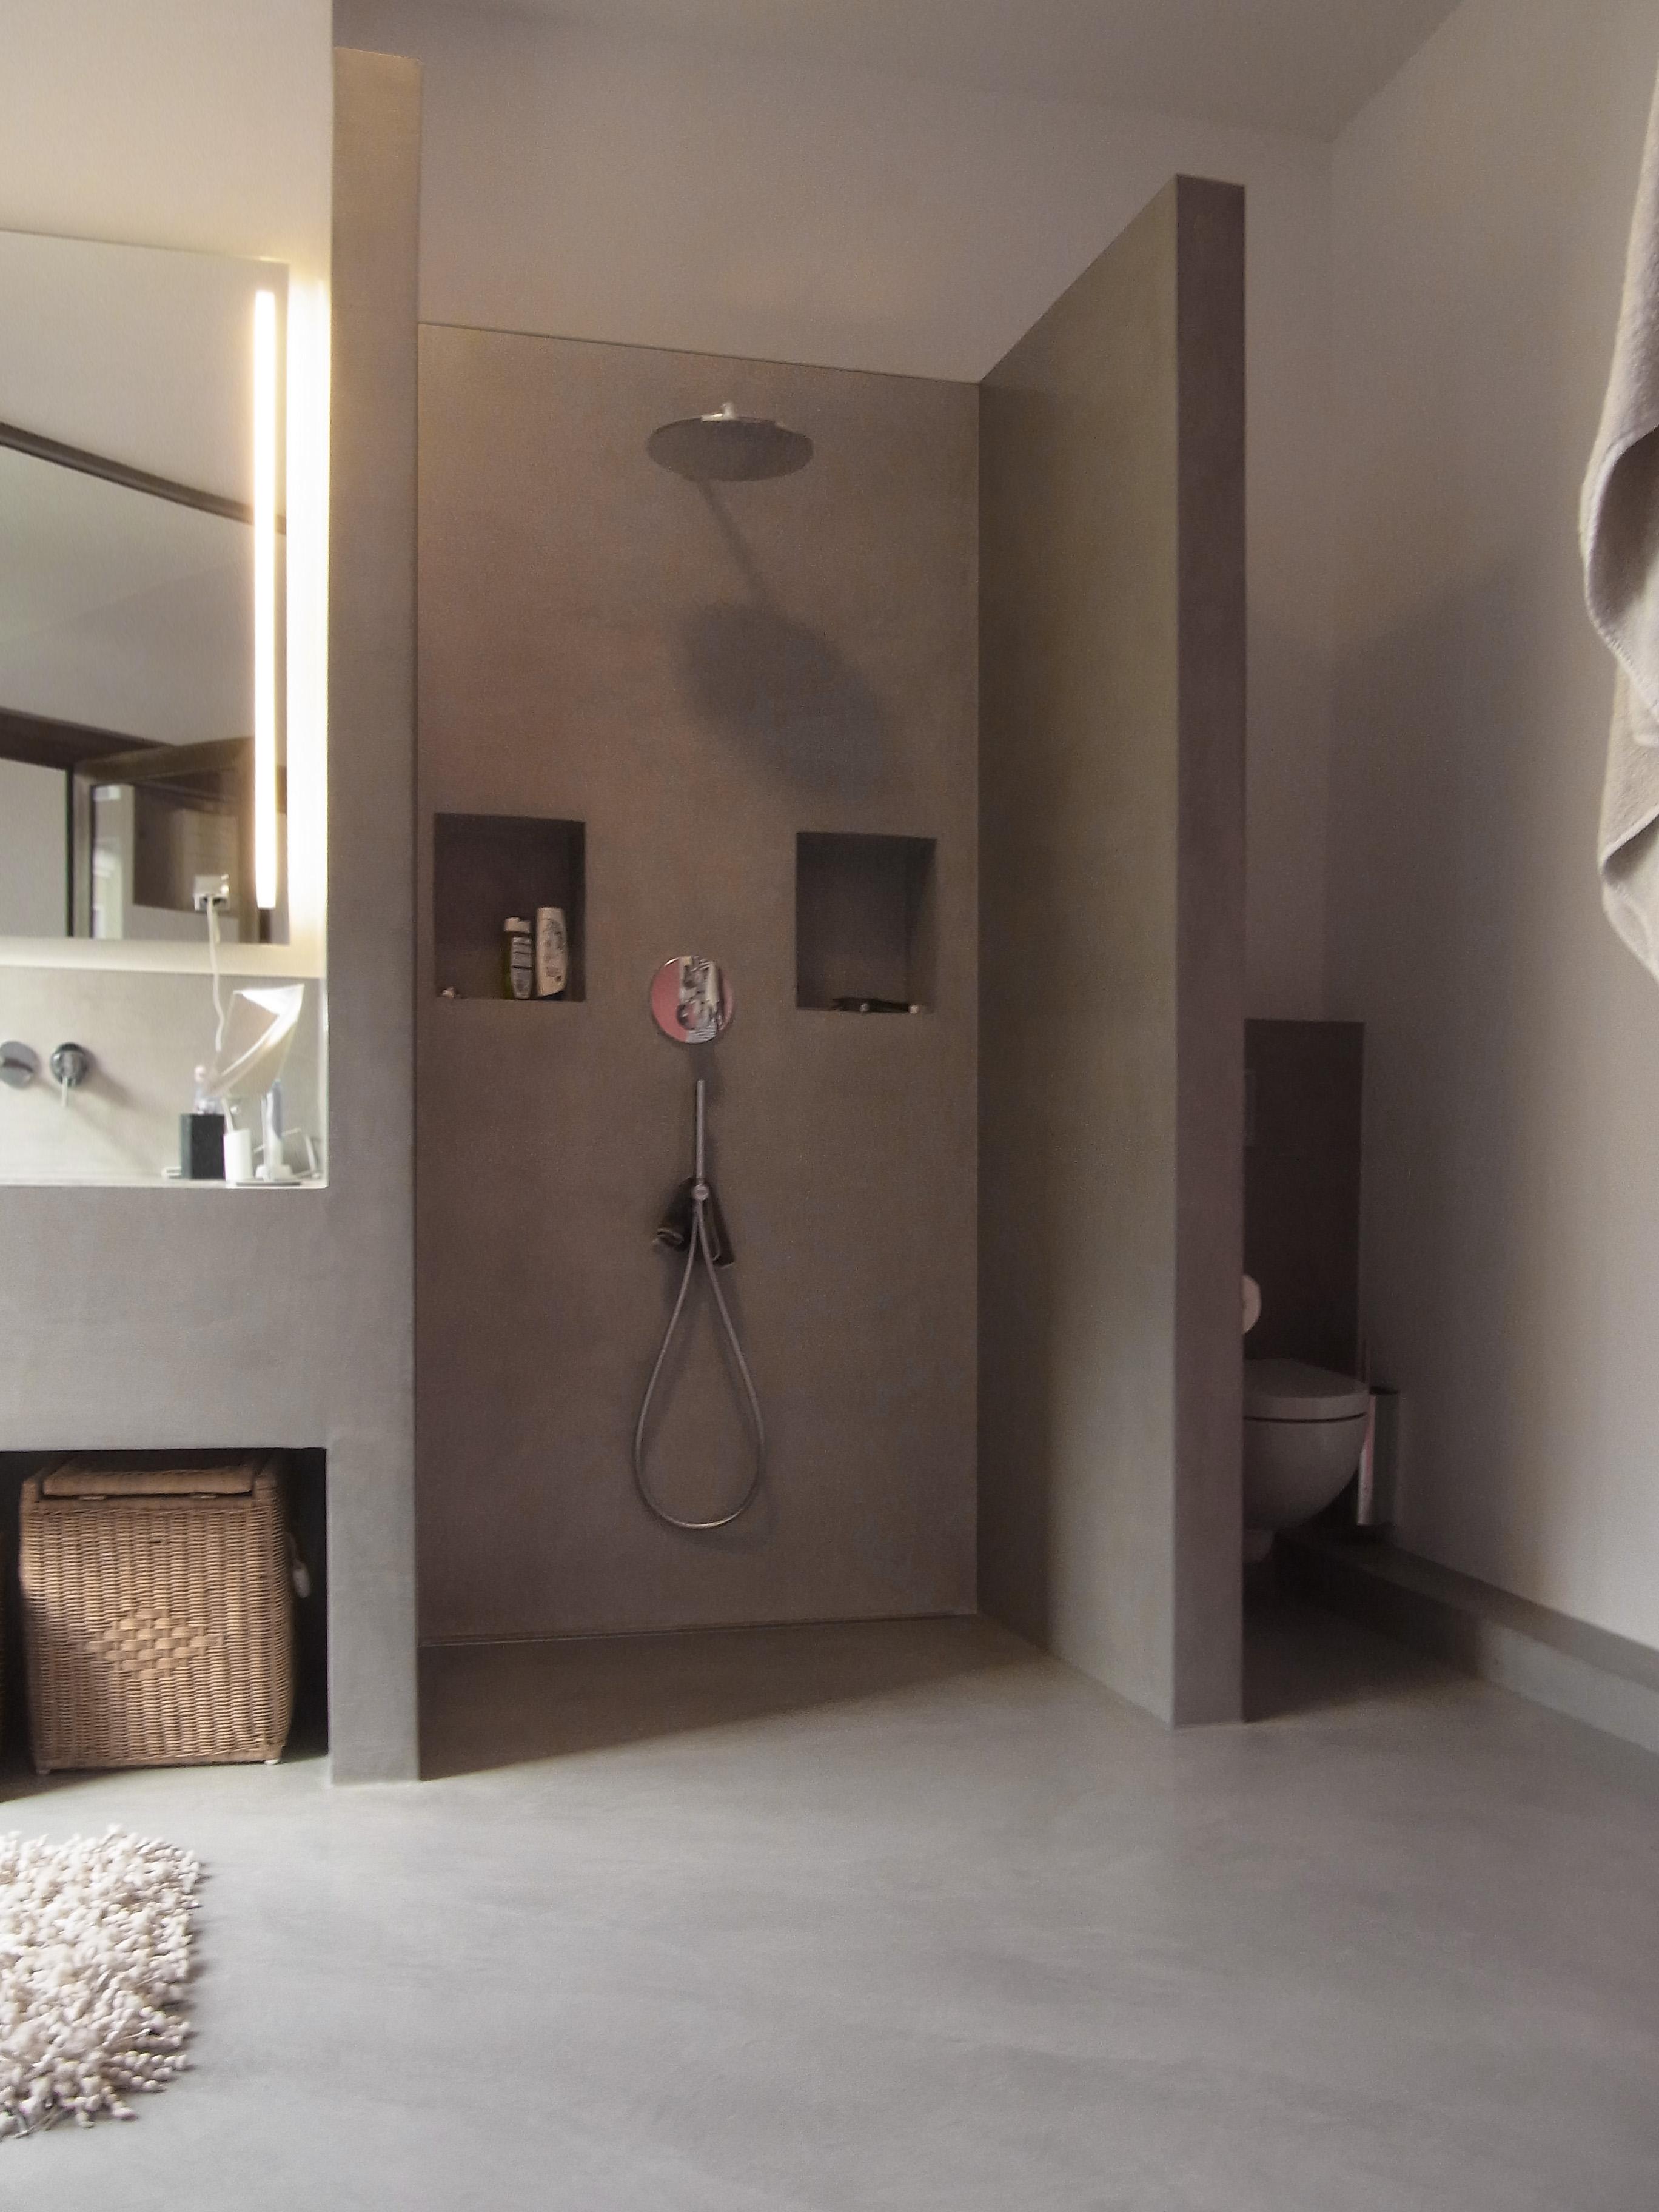 offenes Badezimmer #offenesbadezimmer #betonwaschtisch #betonciredusche ©MEYLENSTEIN